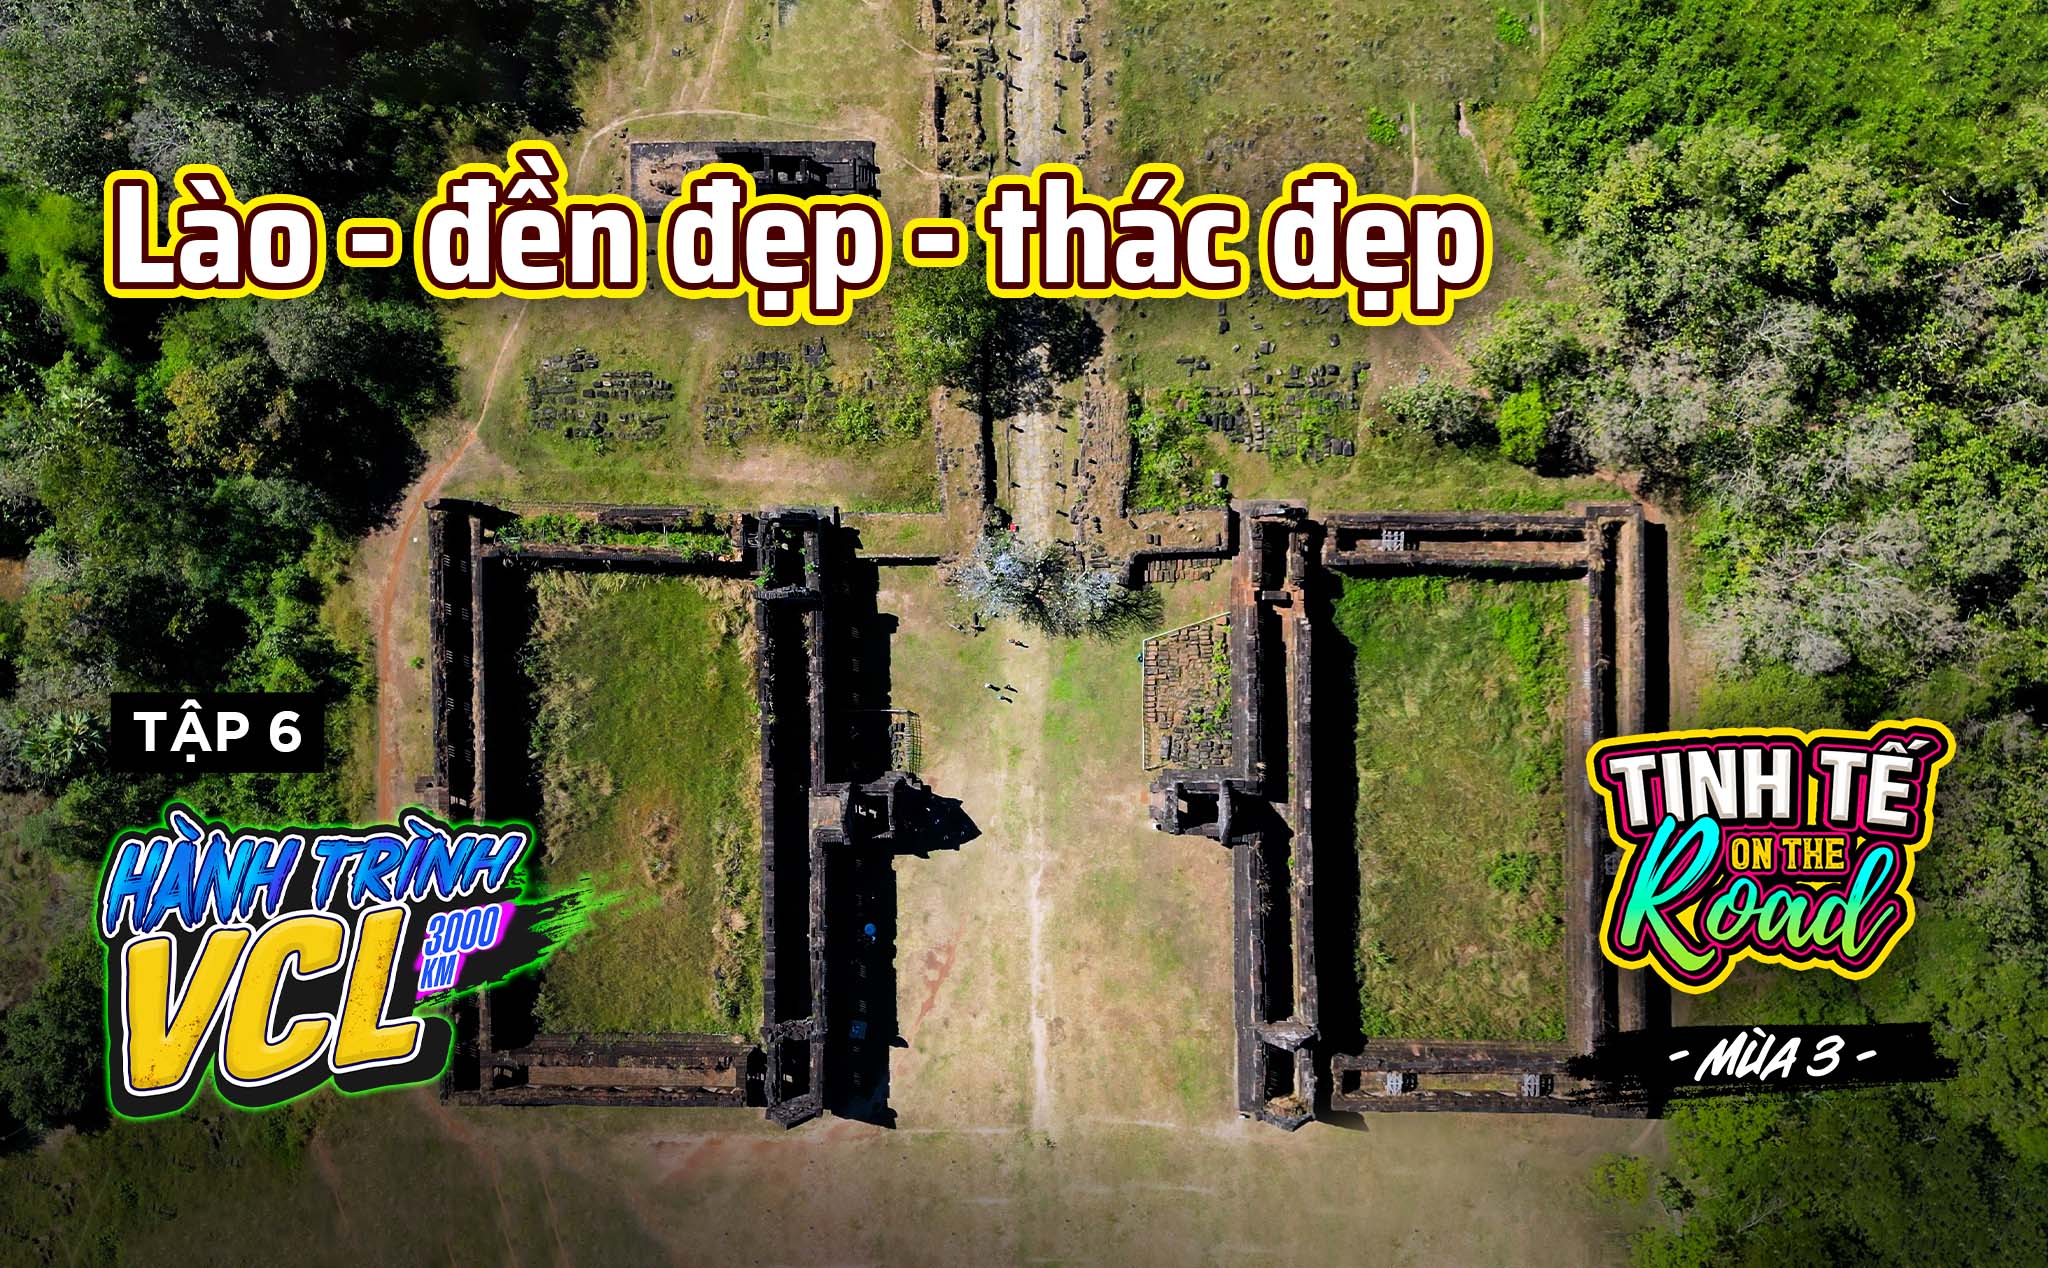 Khám phá Wat Phou cùng với những con thác hùng vĩ phía Nam nước Lào | Tinh tế on the Road S03 E06